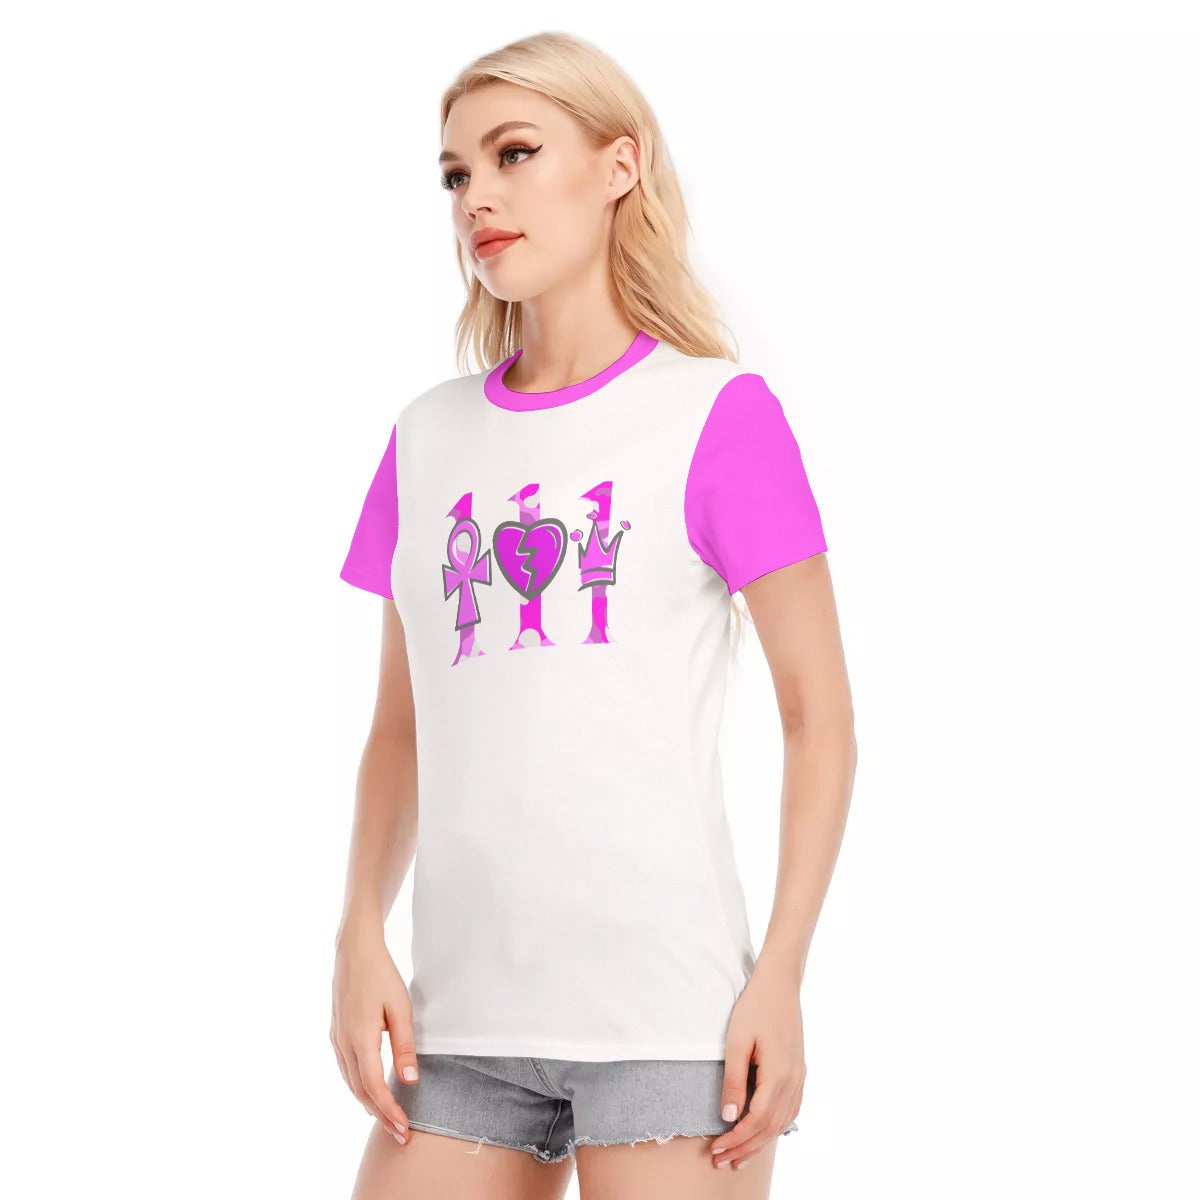 111 PINK CAMO Women's T-Shirt